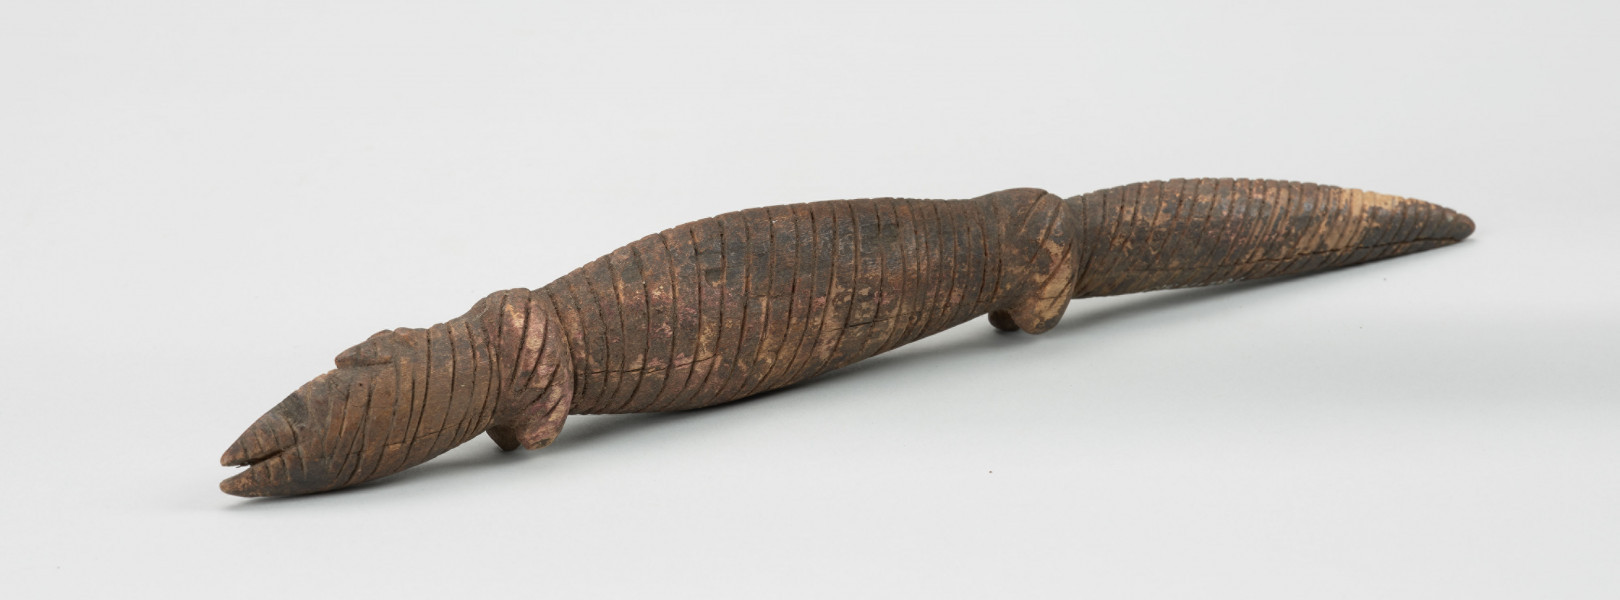 Drewniana figurka krokodyla - Ujęcie z lewej strony z ukosa; Drewniana figurka krokodyla, na całej długości pokryta drobnymi nacięciami. Zaznaczona długa głowa, długi tułów oraz gruby ogon, zakończony spiczaście i spuszczony do dołu. Zaznaczone proste, krótkie kończyny przednie i tylne.